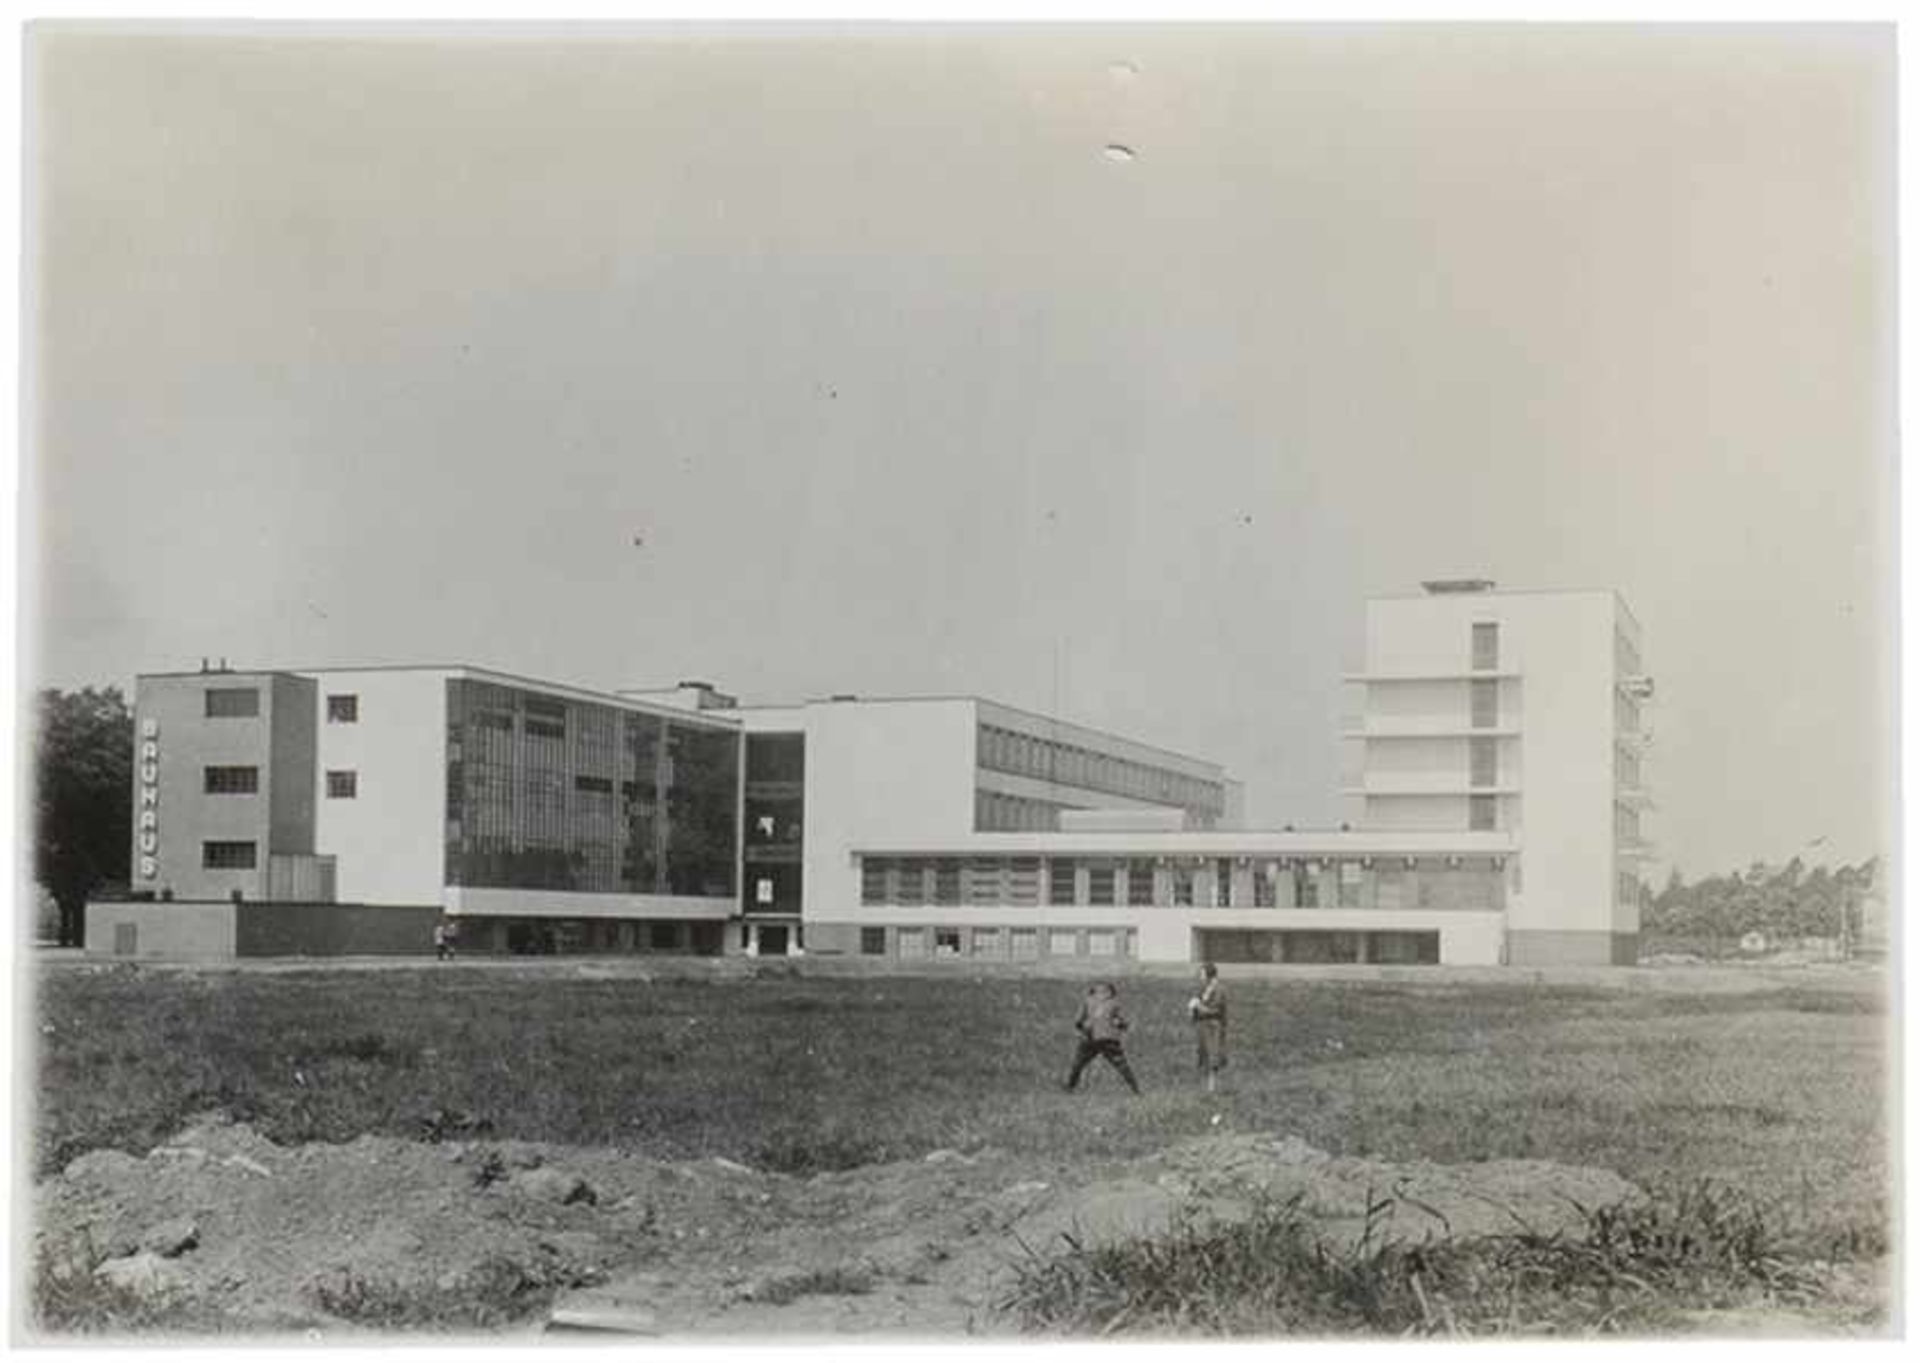 Bauhaus - - Bauhaus-Gebäude in Dessau. Original-Photographie. Vintage. Silbergelatine. Montiert. Auf